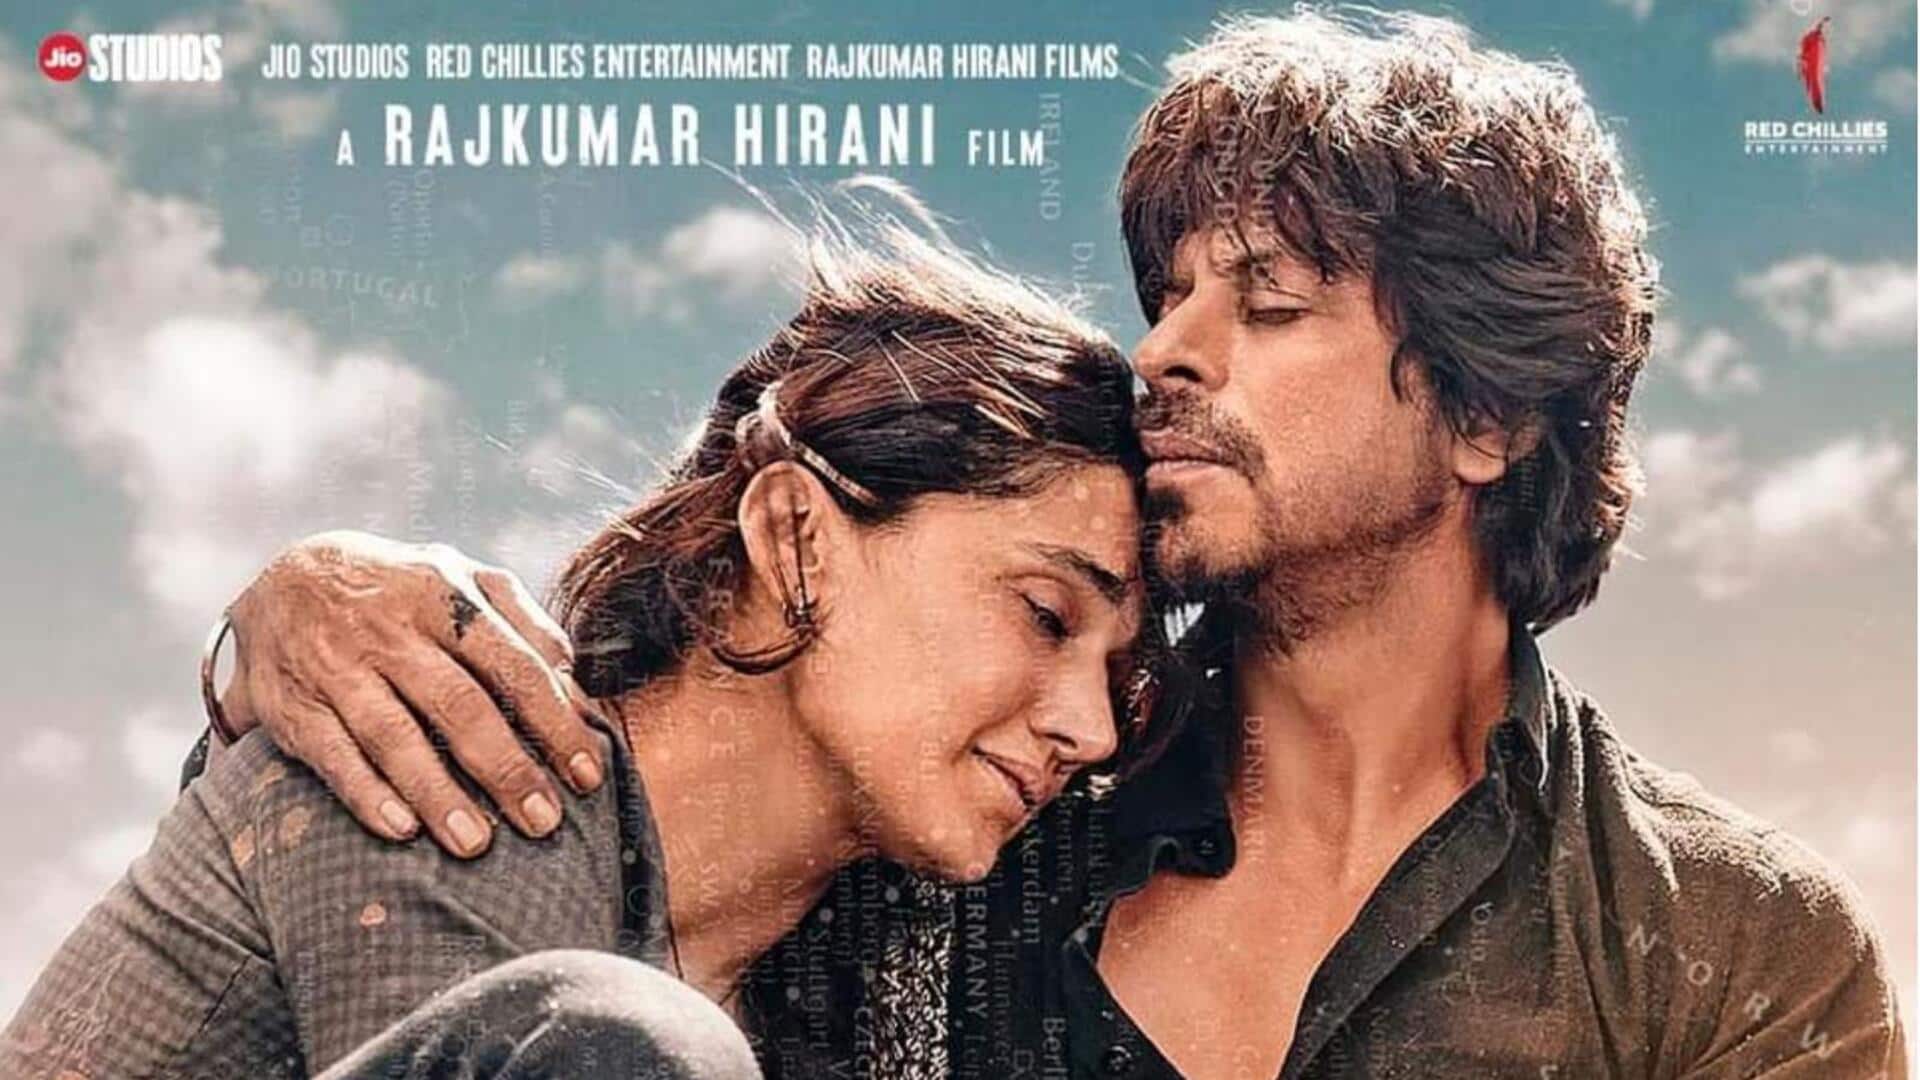 शाहरुख खान की फिल्म 'डंकी' रिलीज के तुरंत बाद ऑनलाइन लीक, HD प्रिंट में उपलब्ध 